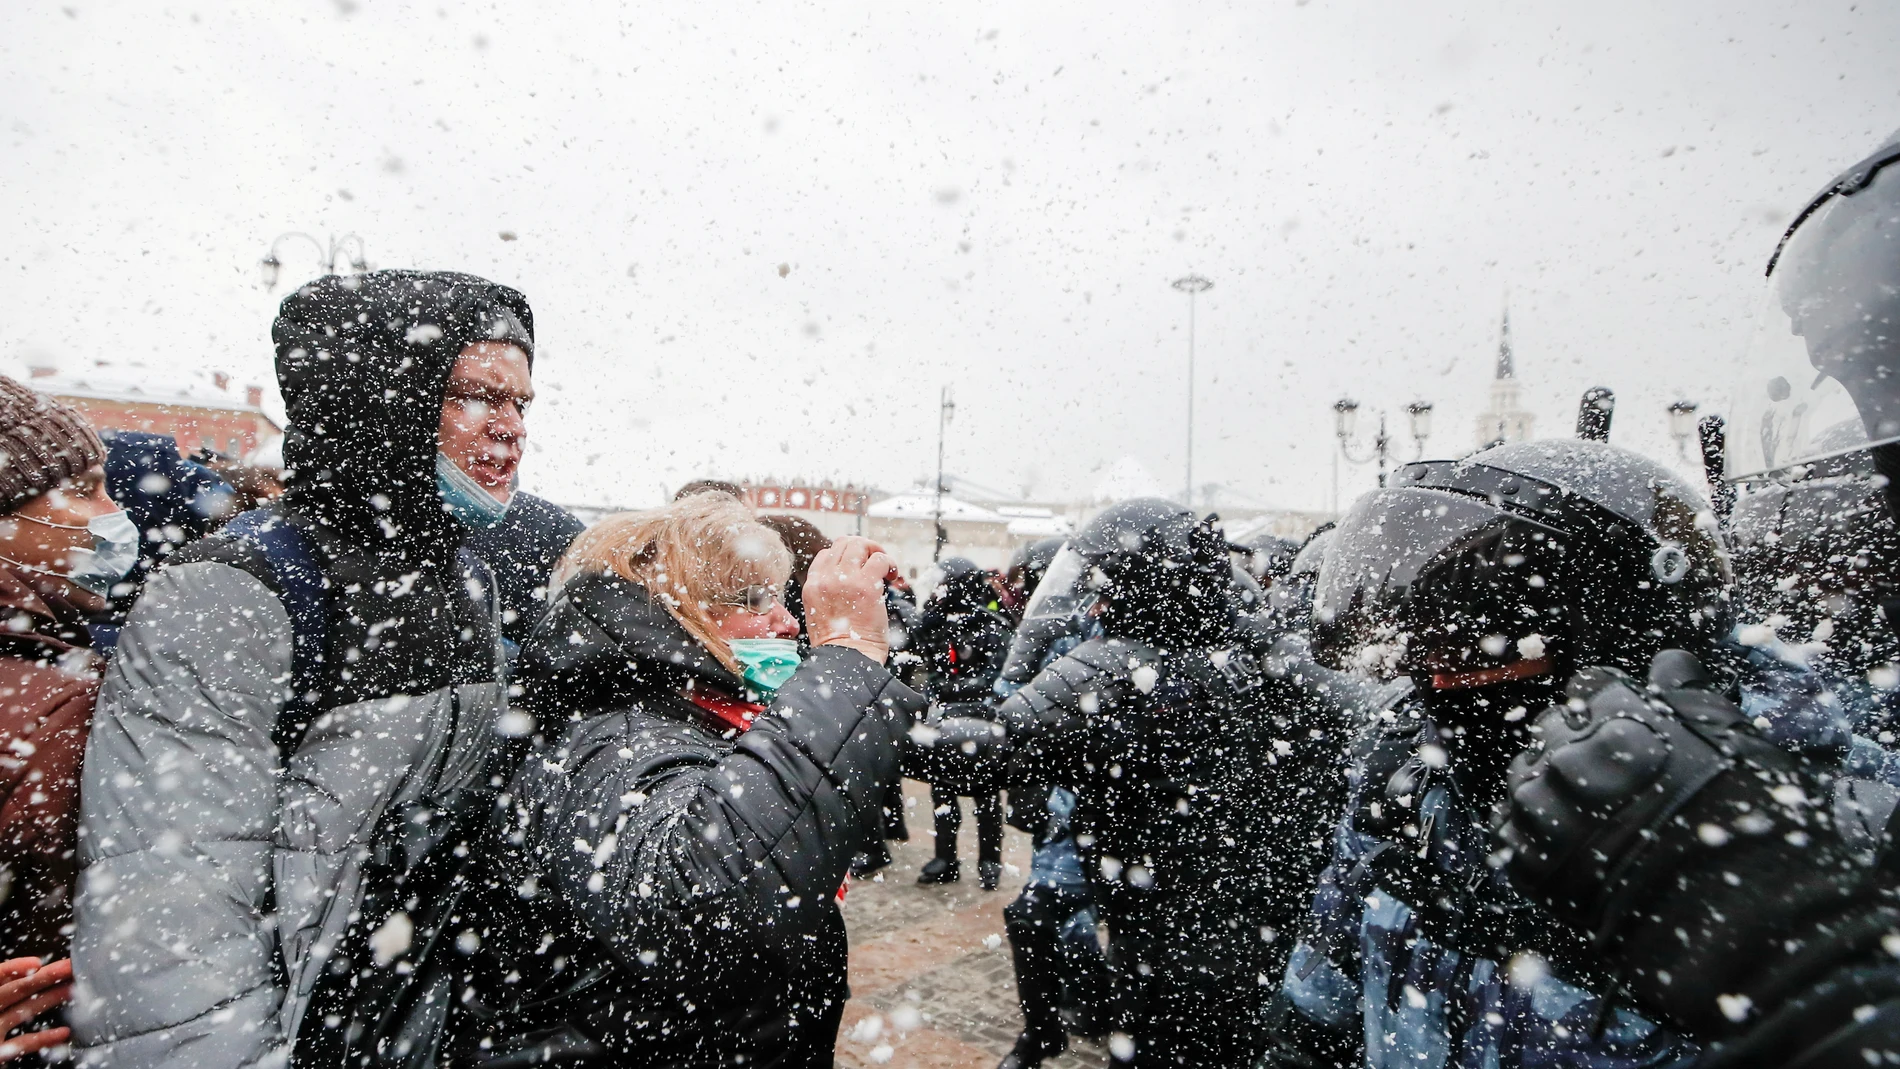 Protestantes y Policía, enfrentados bajo la nieve en Moscú por la liberación de Navalni